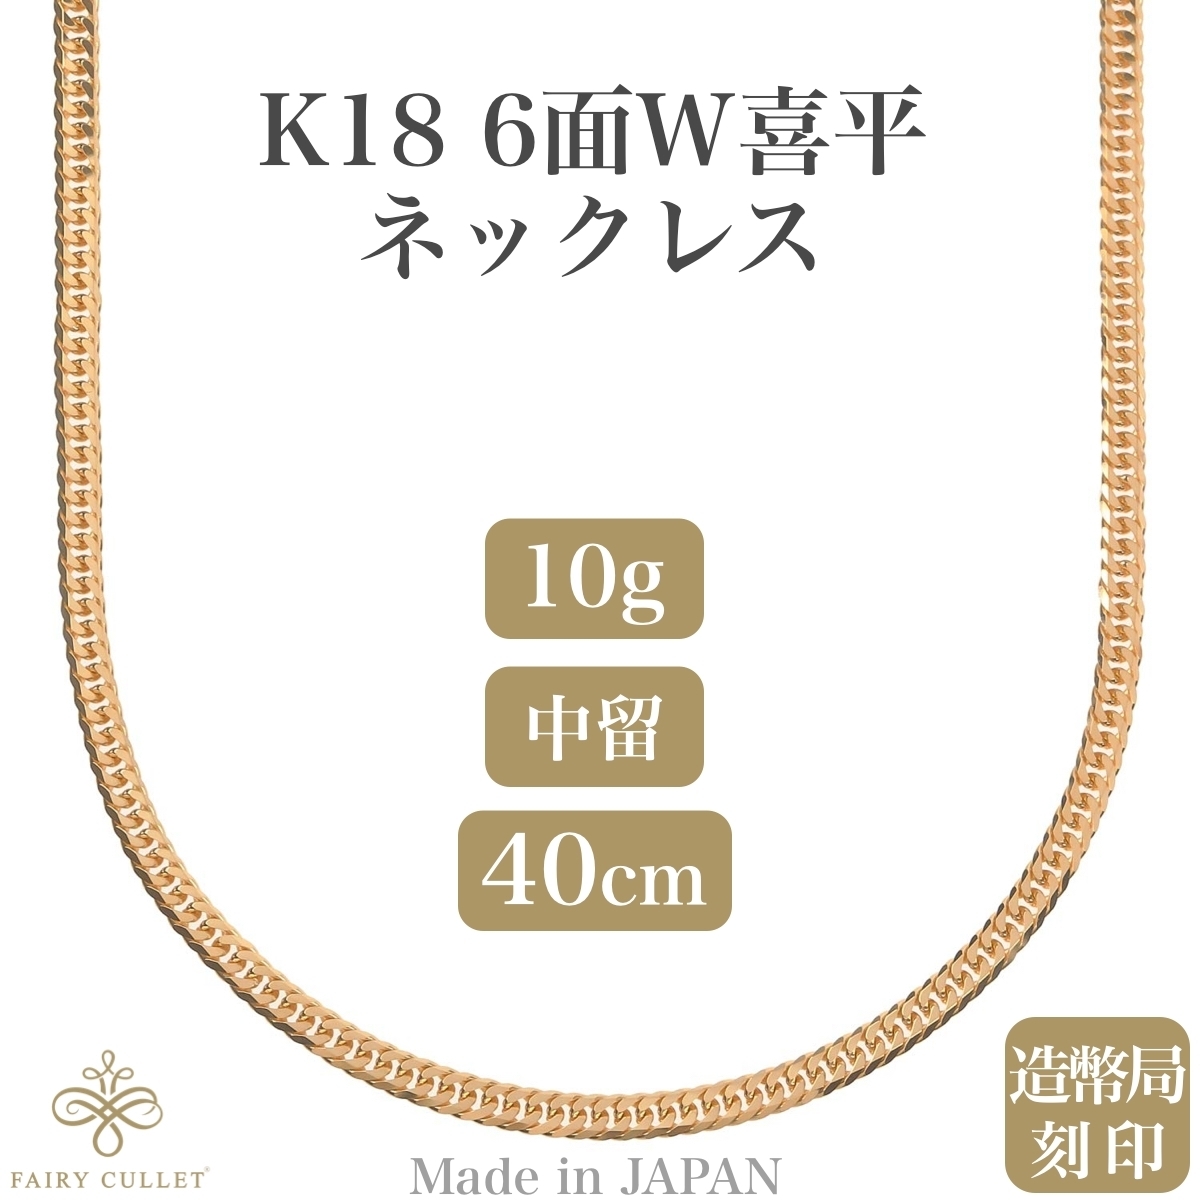 18金ネックレス K18 6面Wチェーン 日本製 約10g 40cm 中留め_画像1